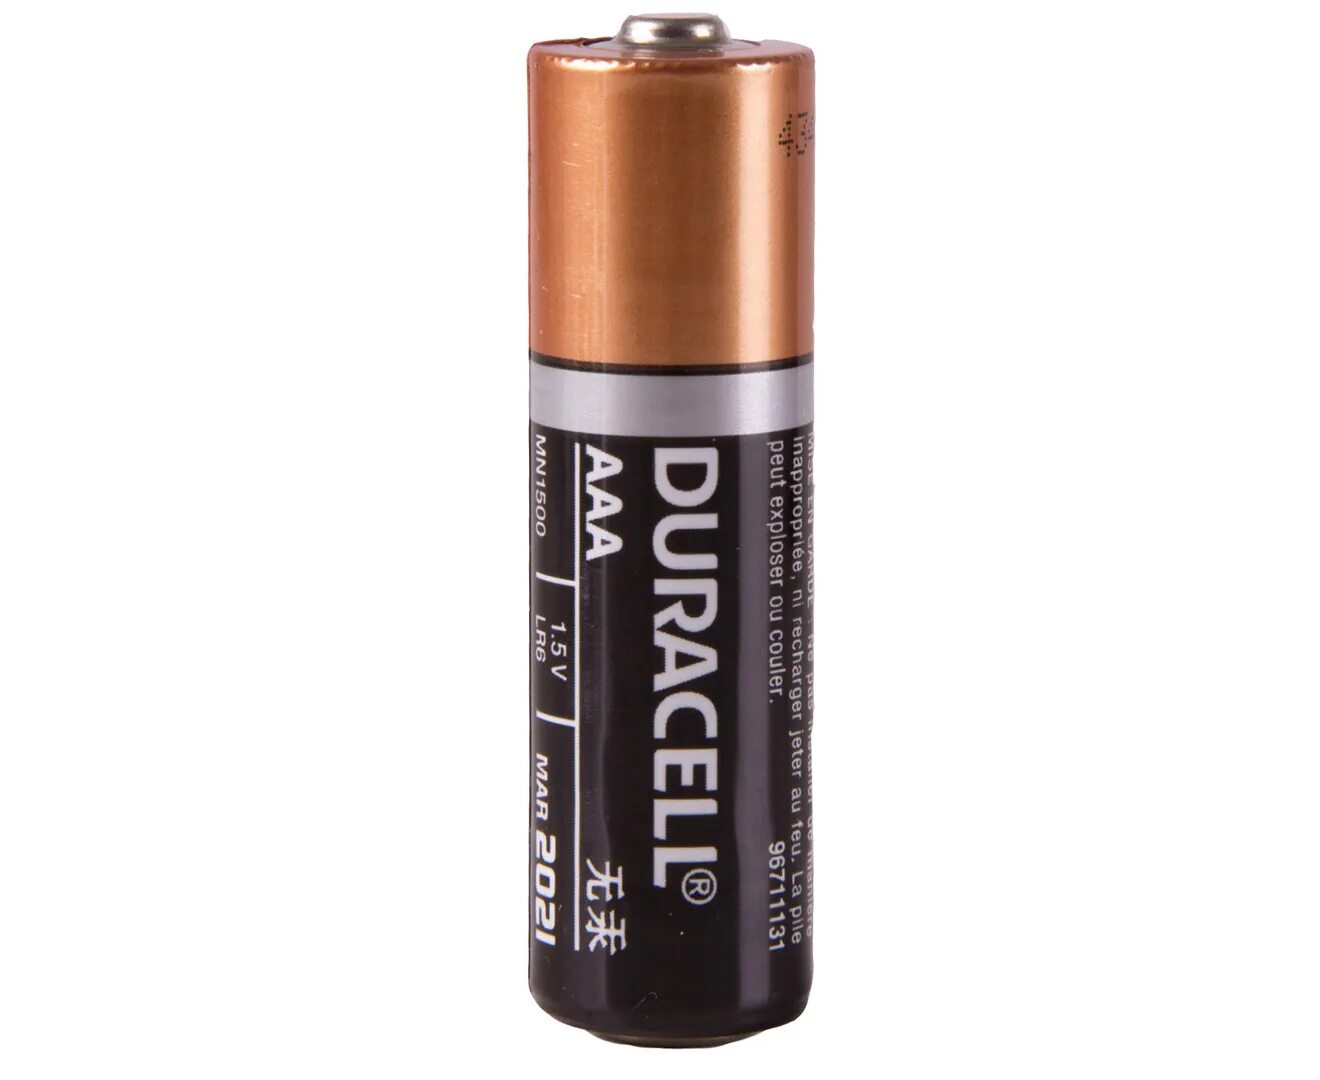 Aa battery. Батарейка Duracell AA. Дурасель duraseal батарейки. Батарейка Duracell lr06 up. Батарейки Duracell lr6 AA алкалиновые (щелочные) пальчиковые.